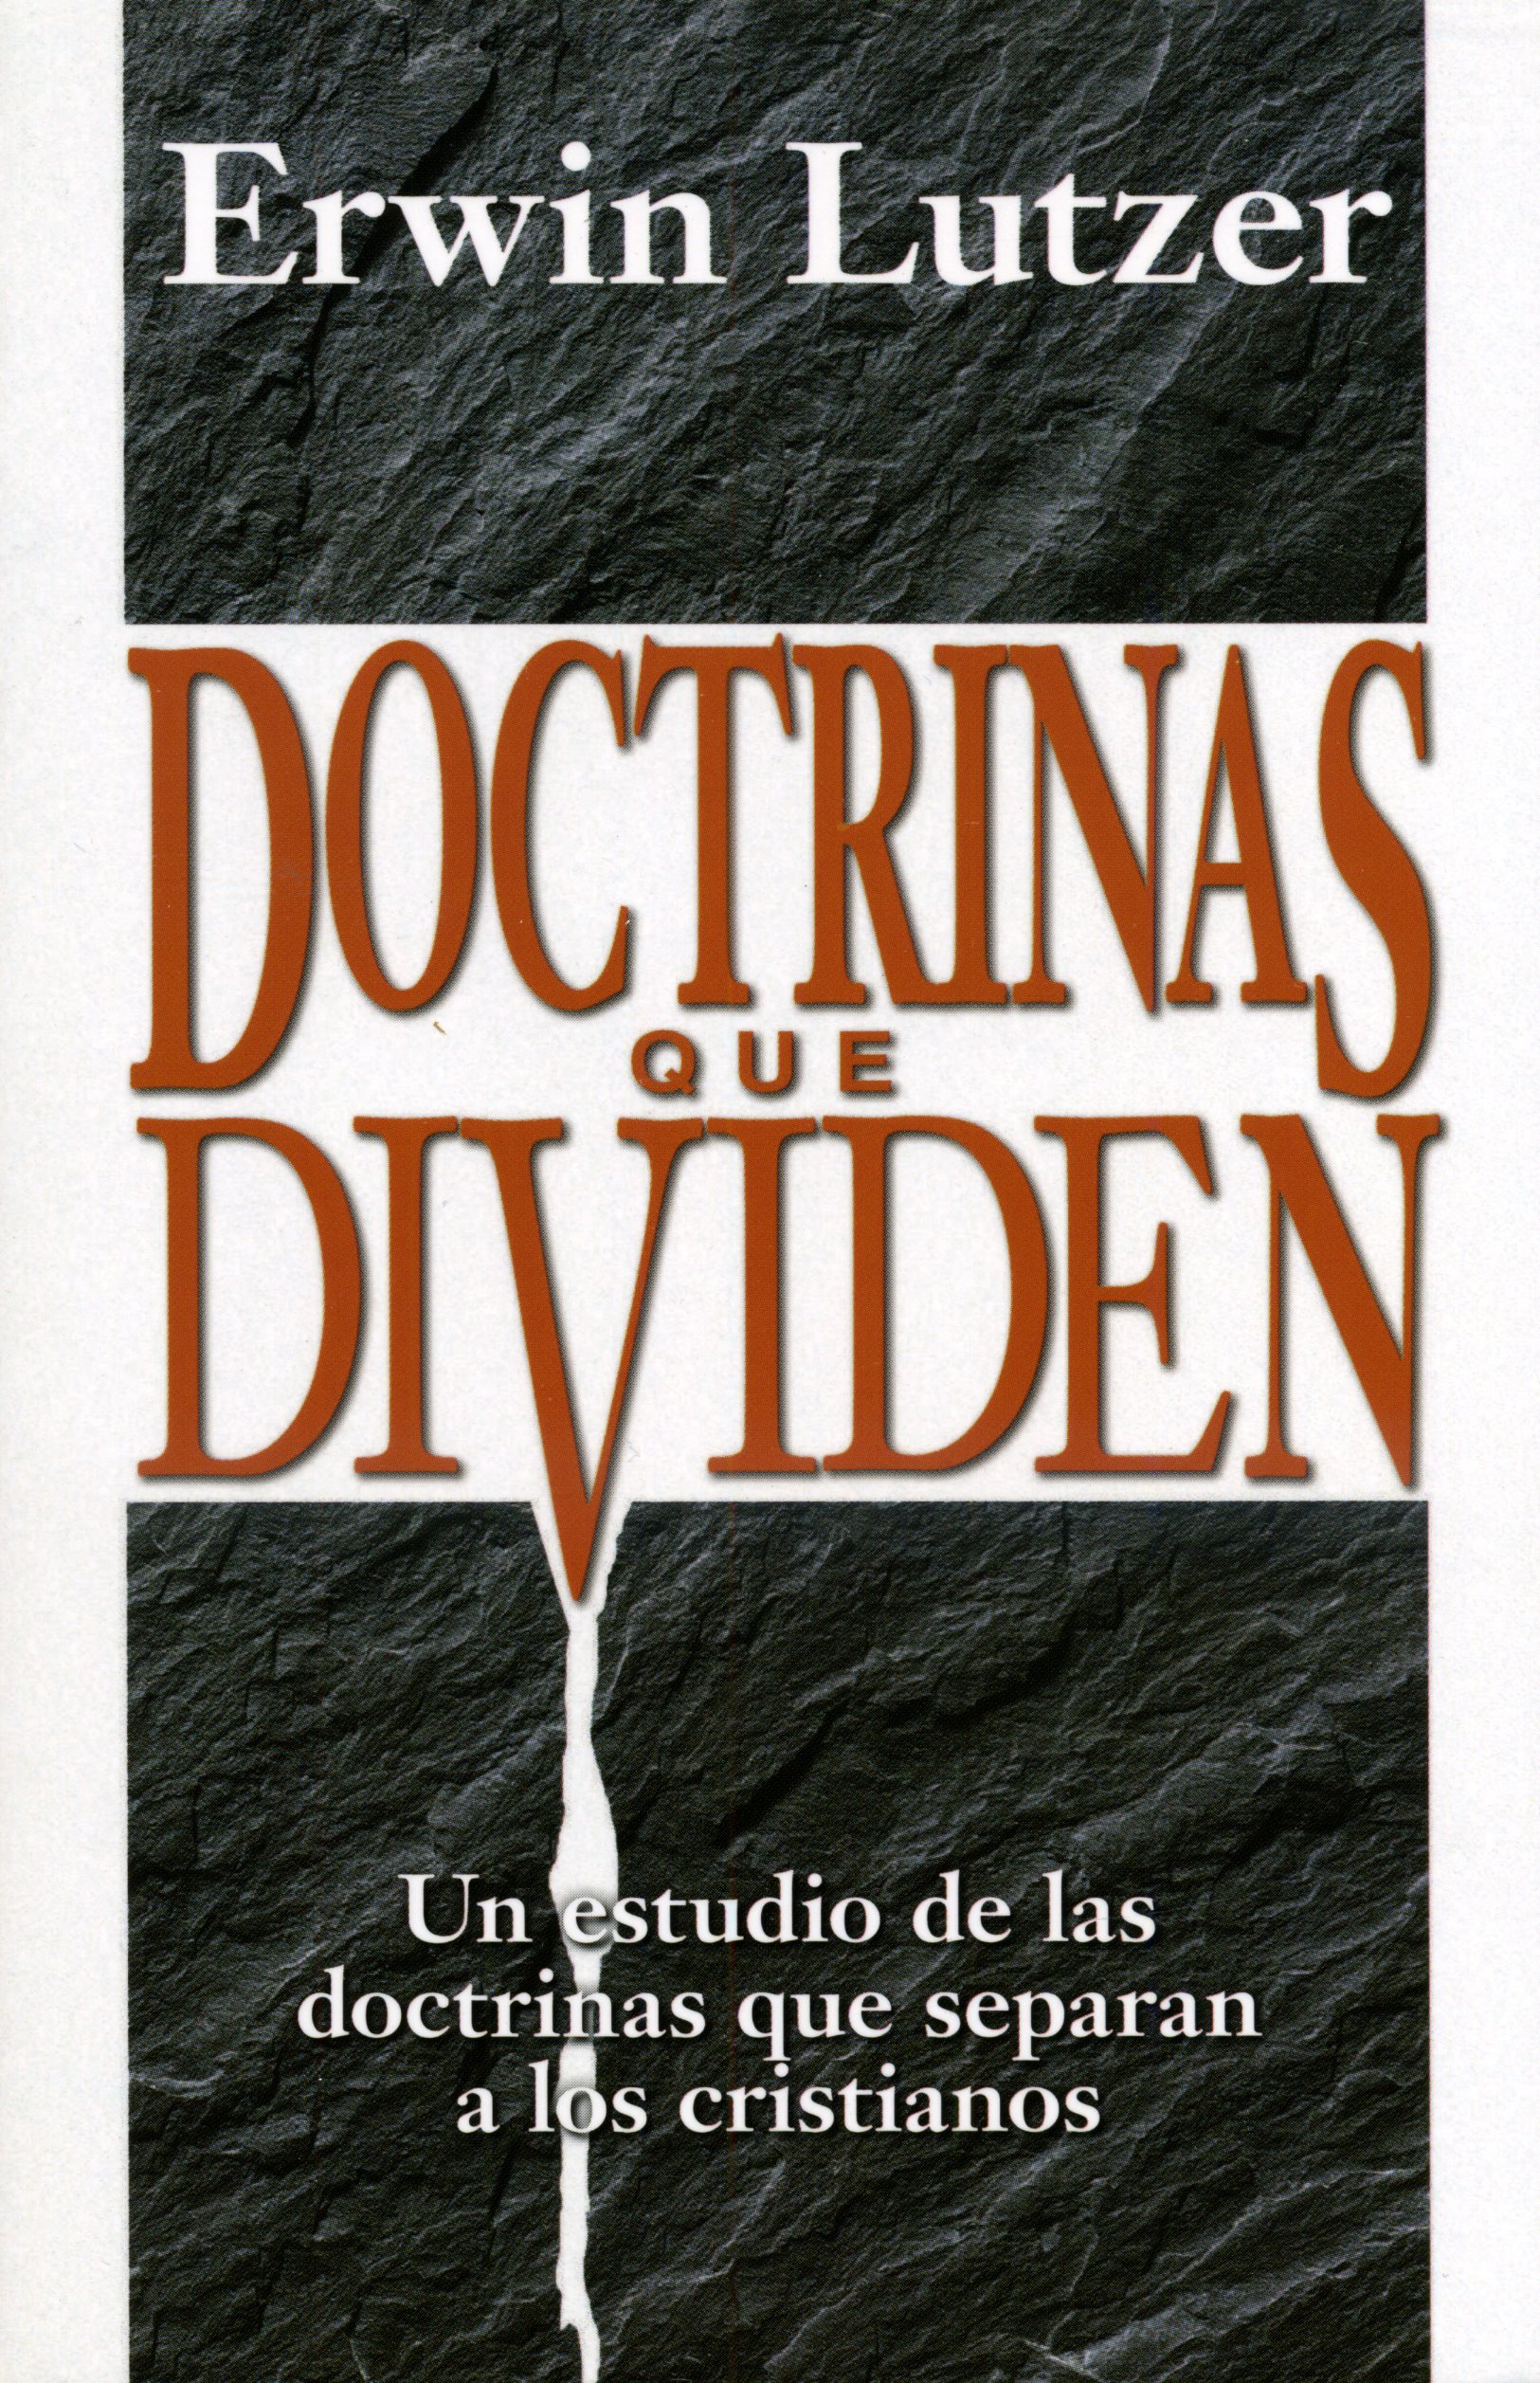 Doctrinas que dividen